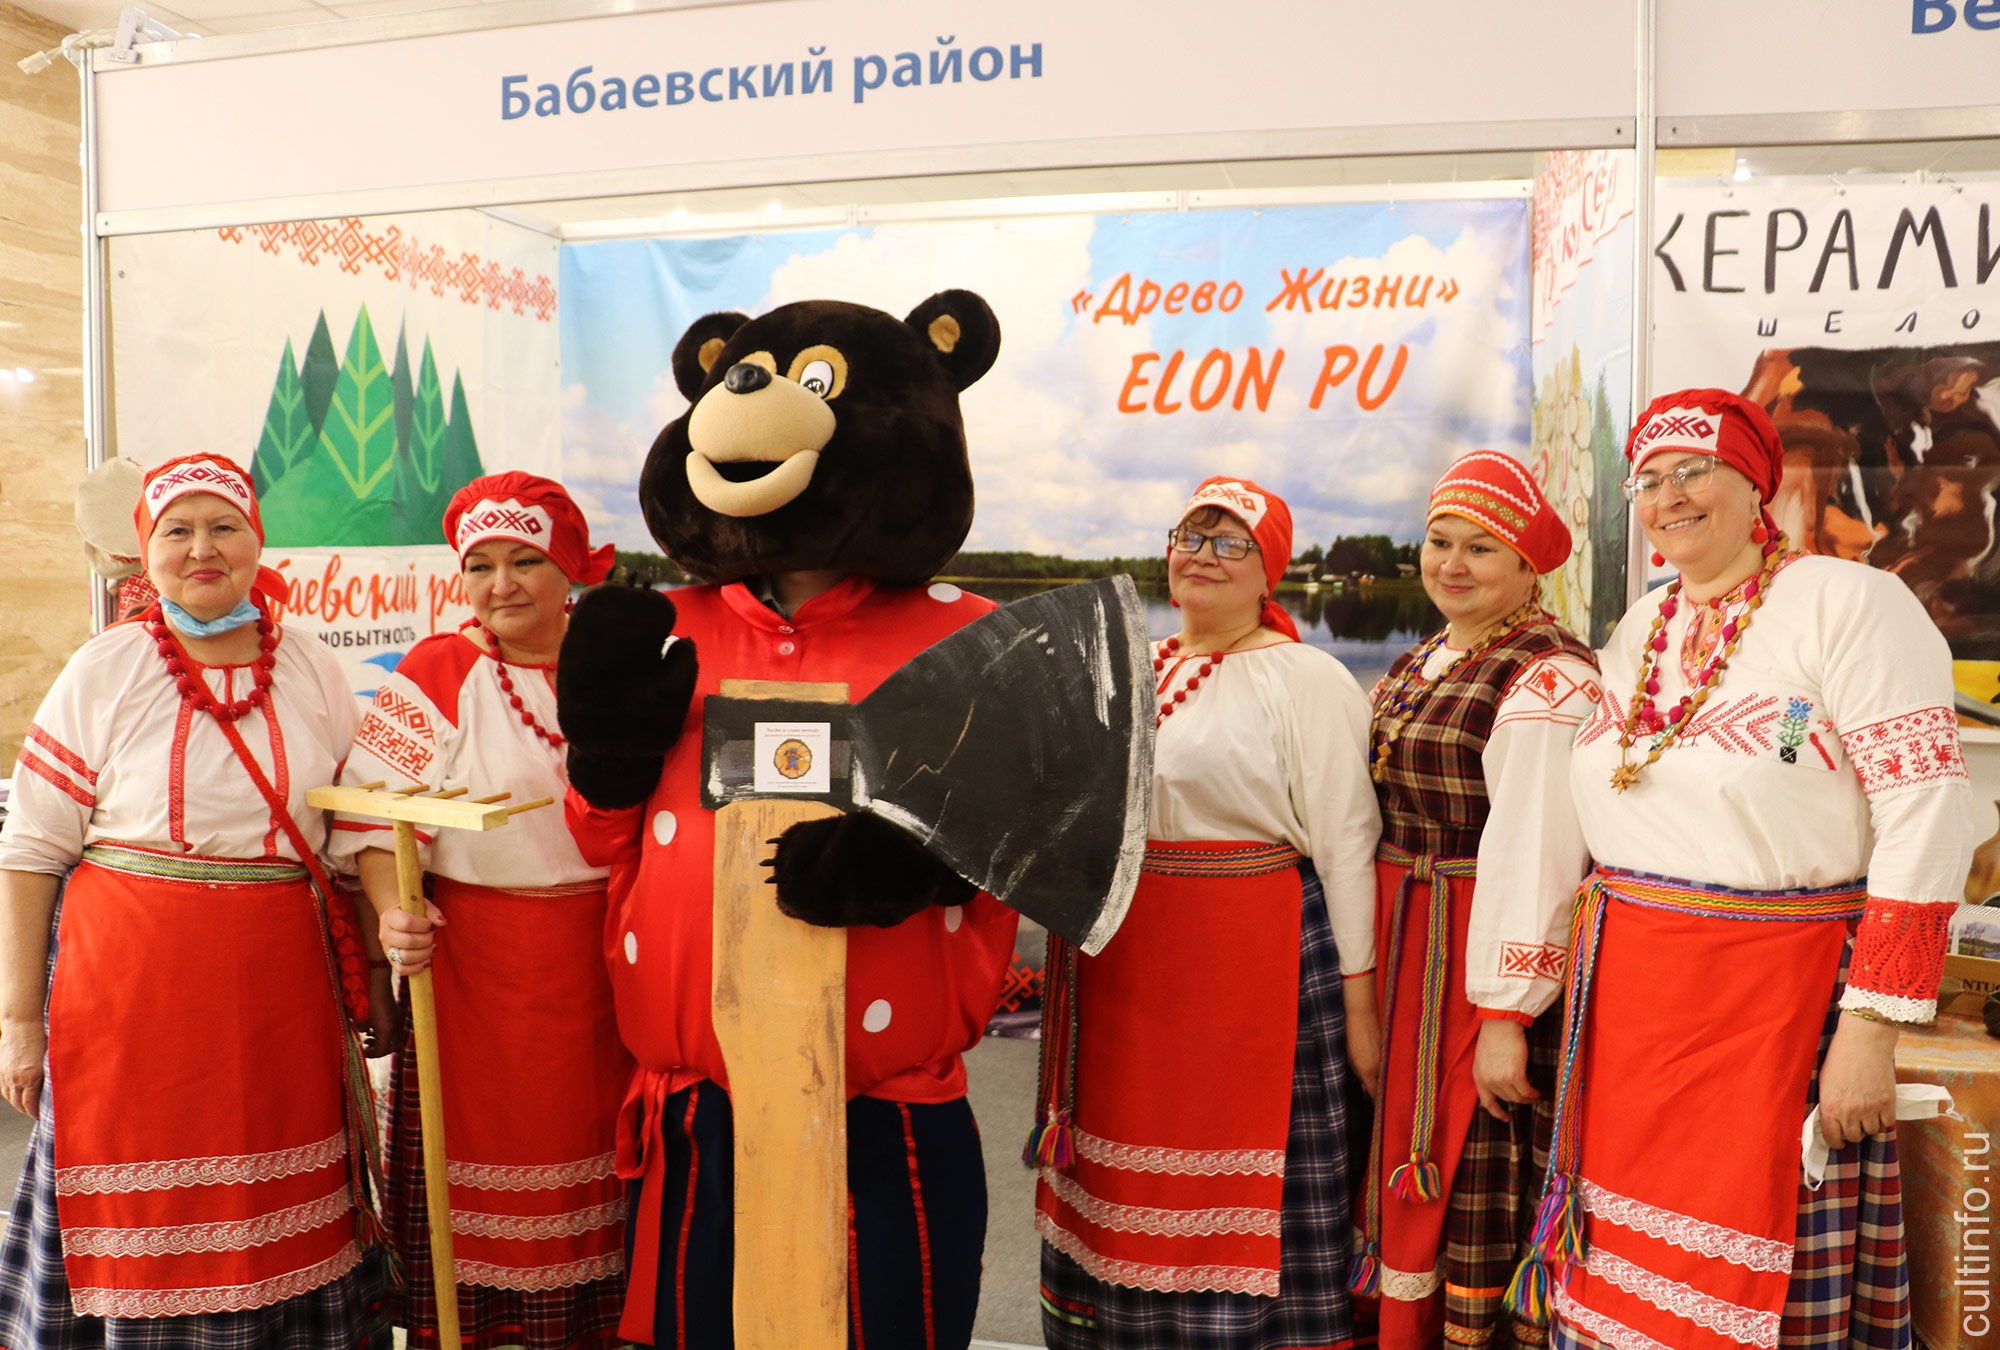 XIX Межрегиональная выставка «Ворота Севера». Бабаевский район и гость из Сямжи